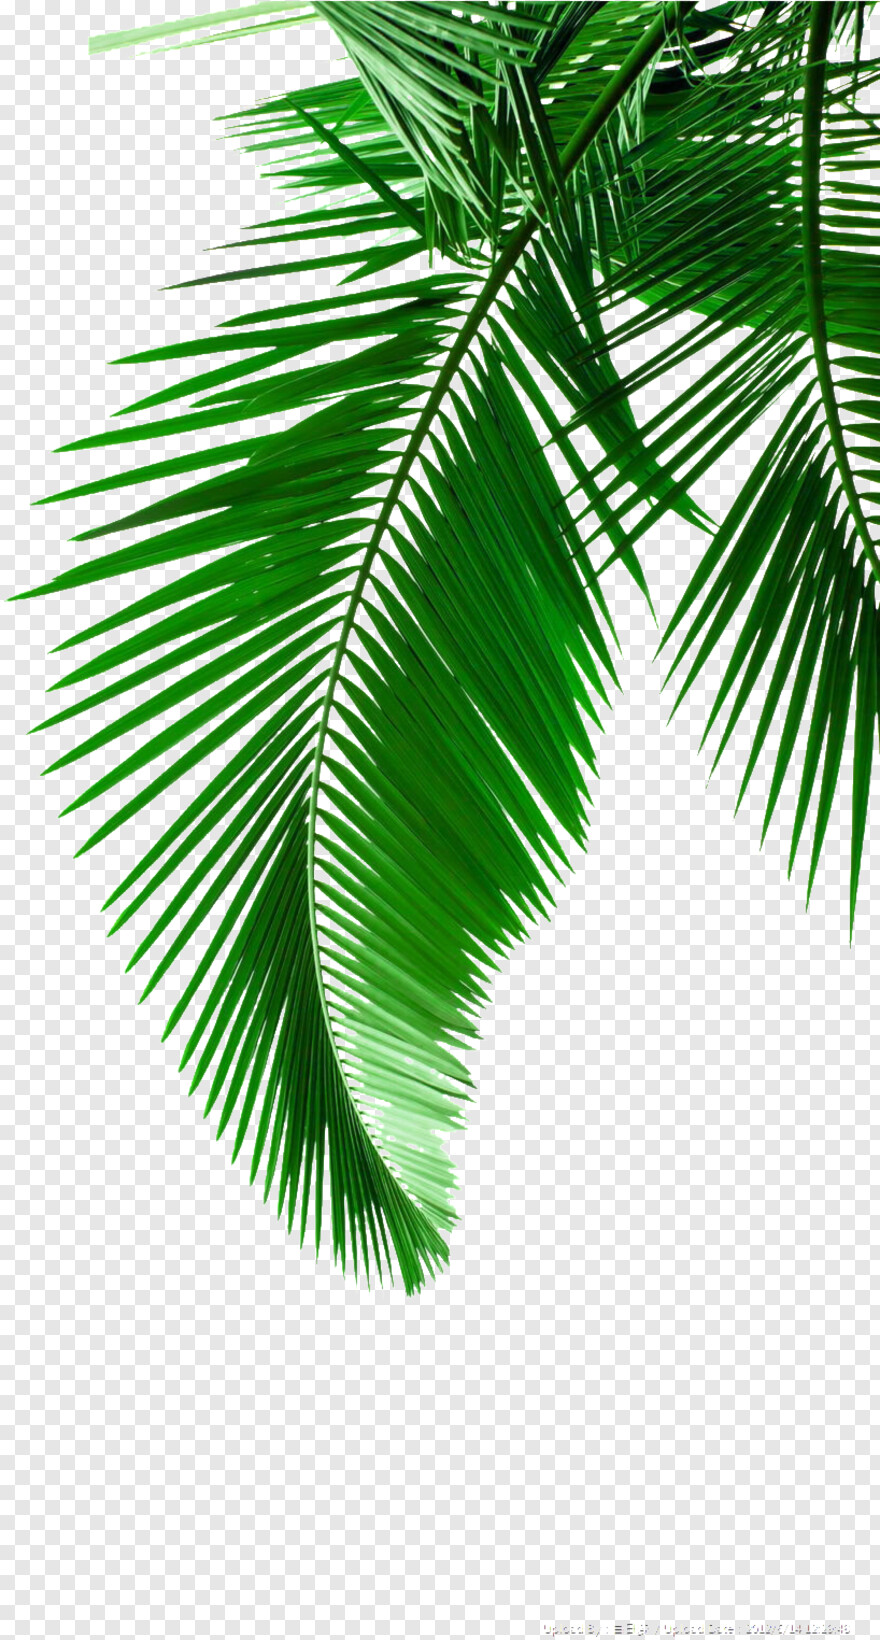 palm-leaf # 945709